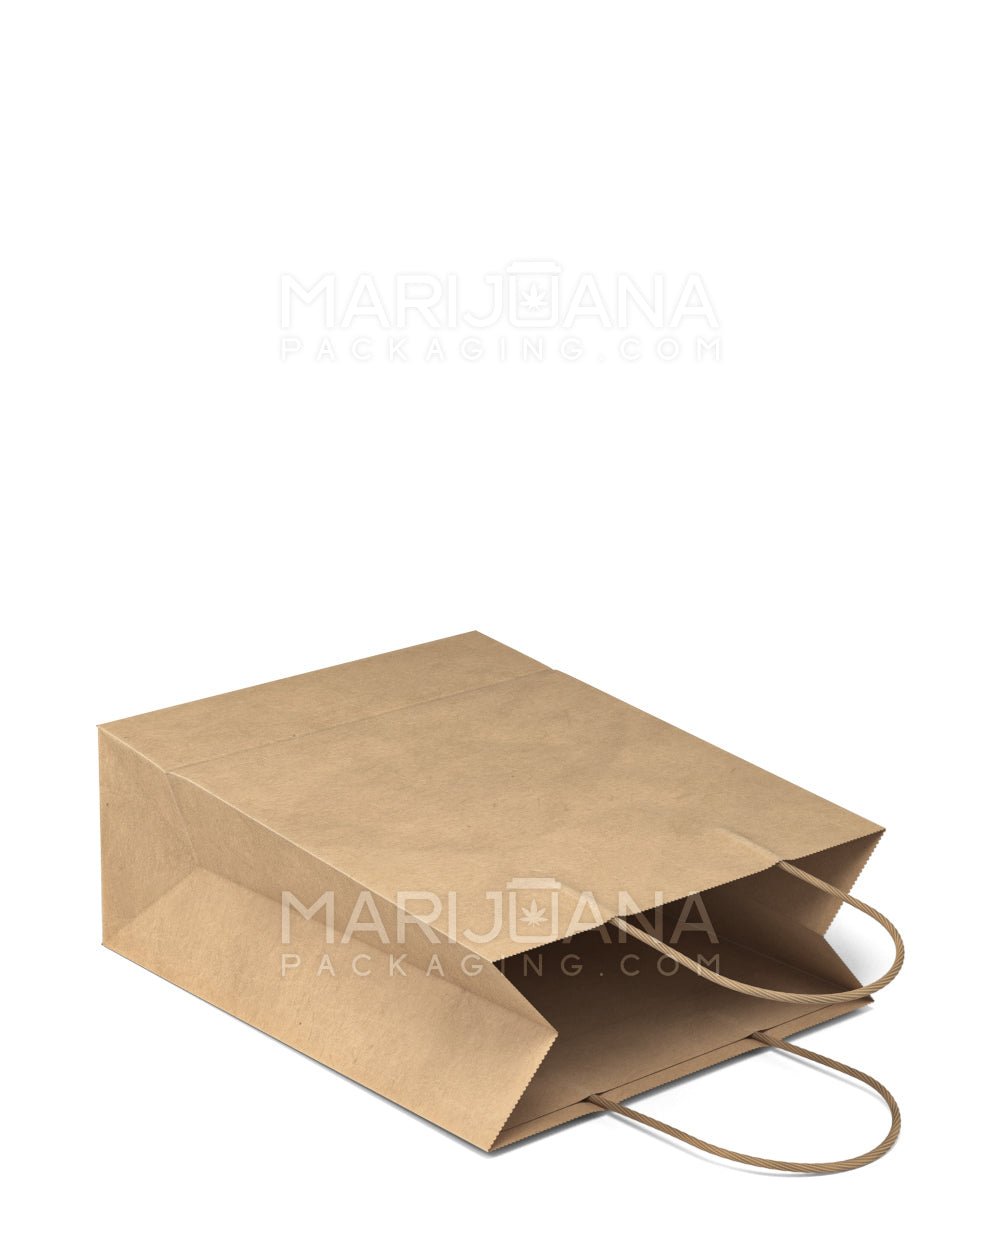 Kraft Paper Shopping Bags - Brown